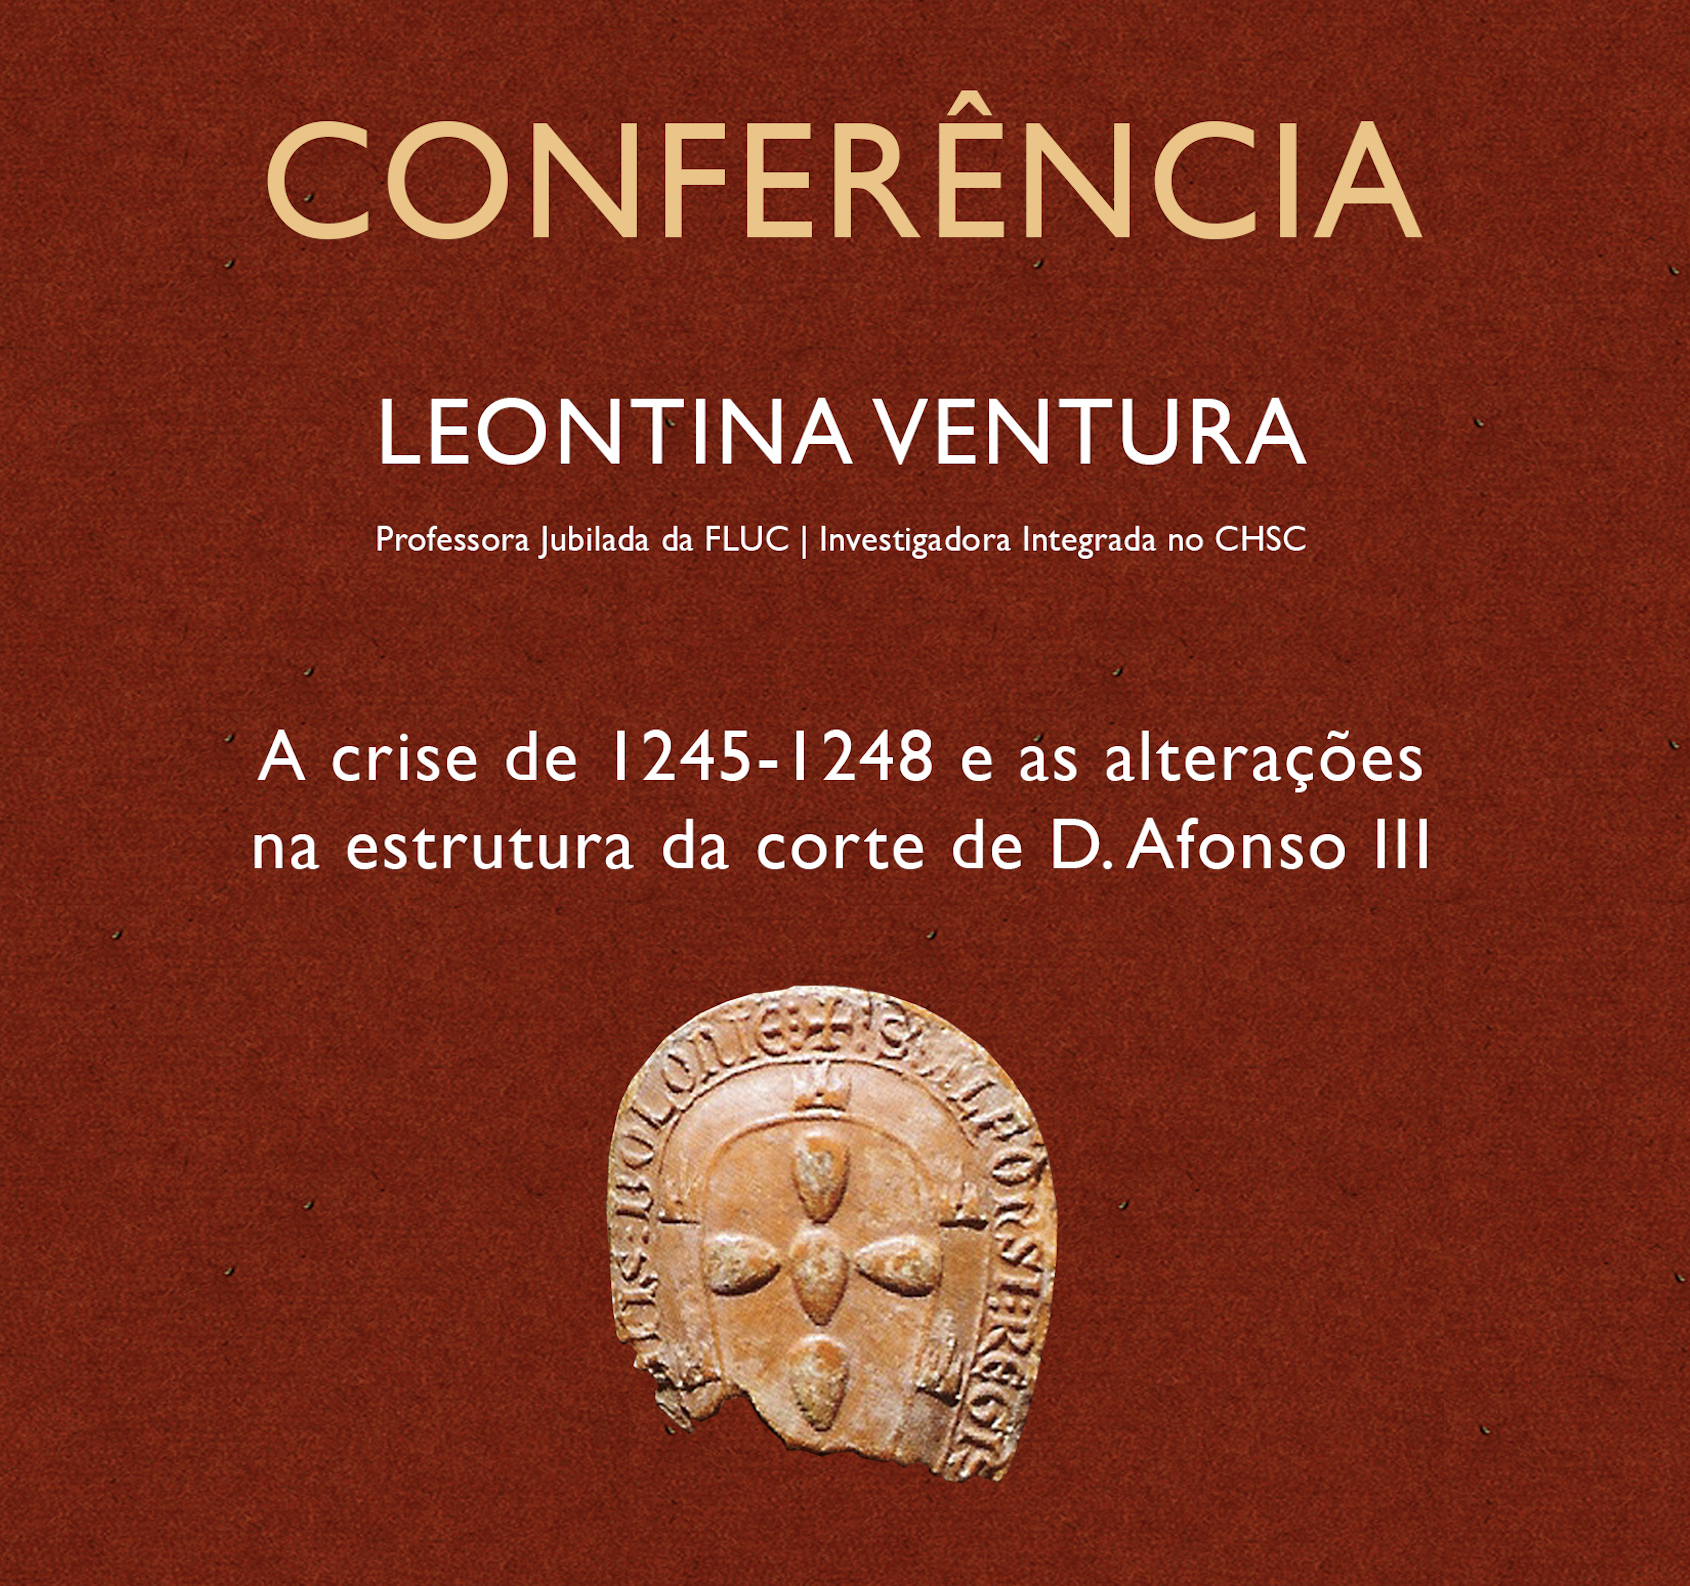 Aula aberta por Leontina Ventura: A crise de 1245-1248 e as alterações na estrutura da corte de D. Afonso III